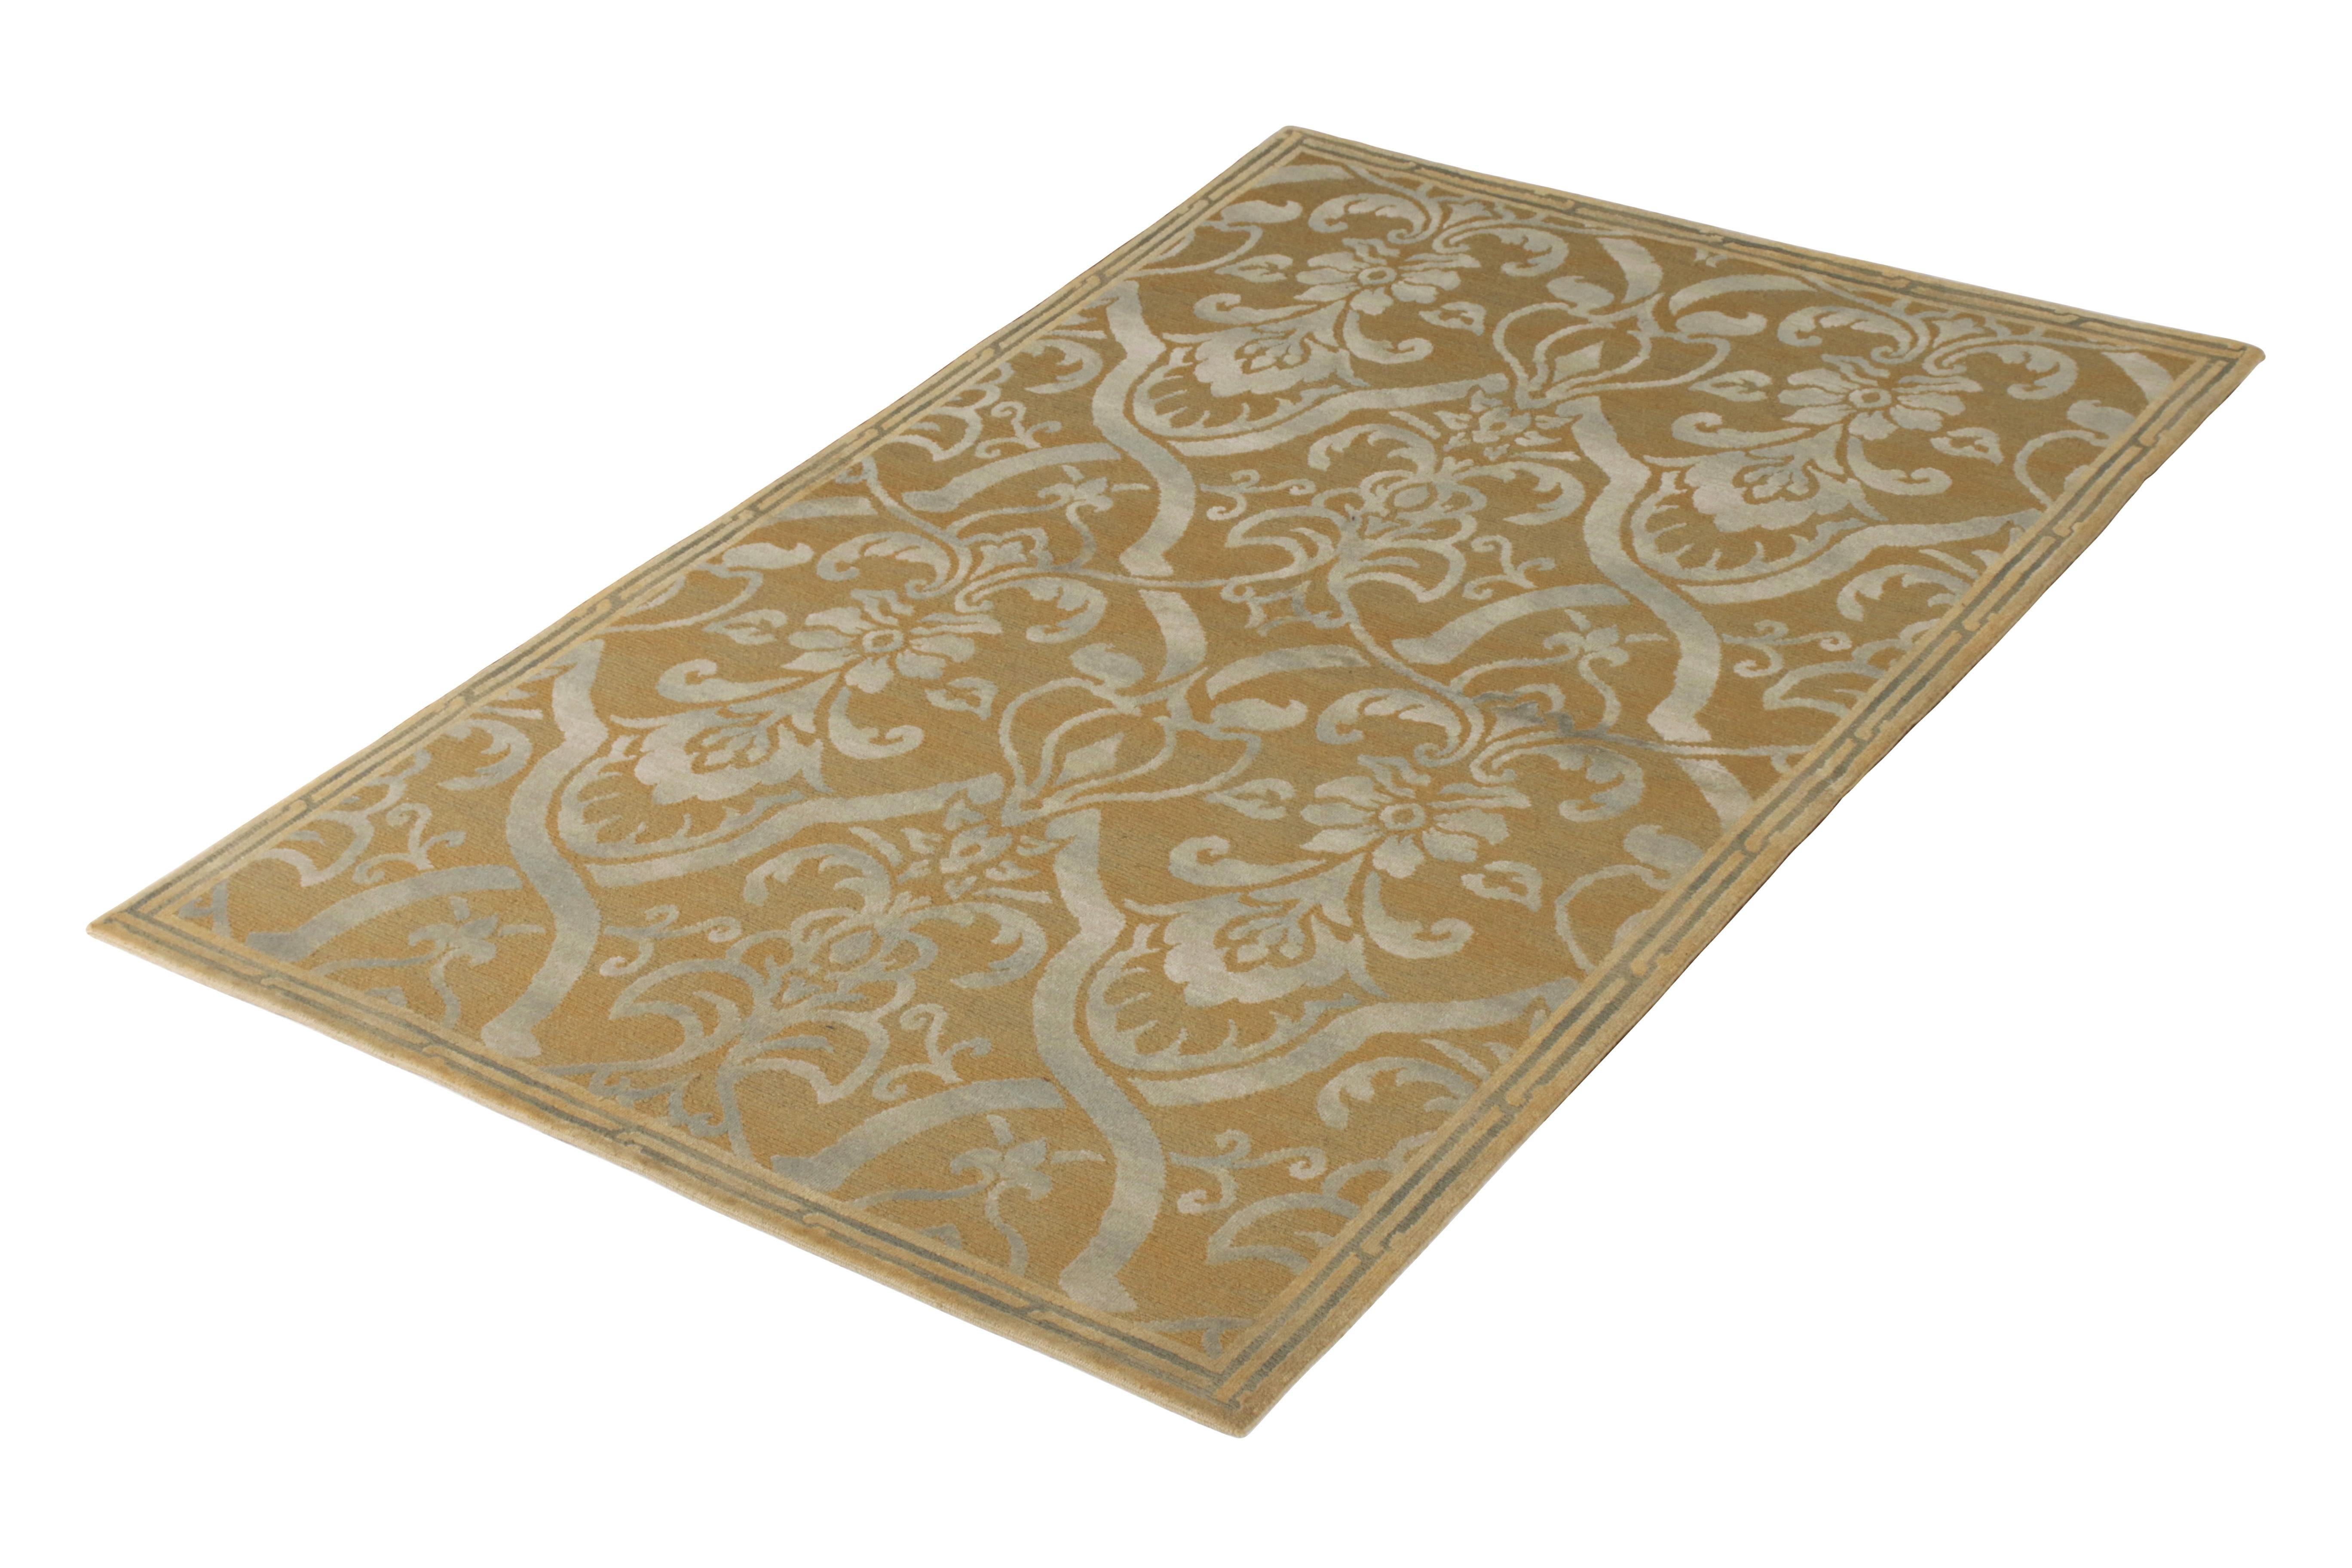 Une ode 6x9 aux styles de tapis italiens du 19ème siècle en beige-brun et gris, rejoignant la collection européenne de Rug & Kilim. Noué à la main en laine, il fait un clin d'œil aux motifs européens de treillis et de fleurs dans des accents de